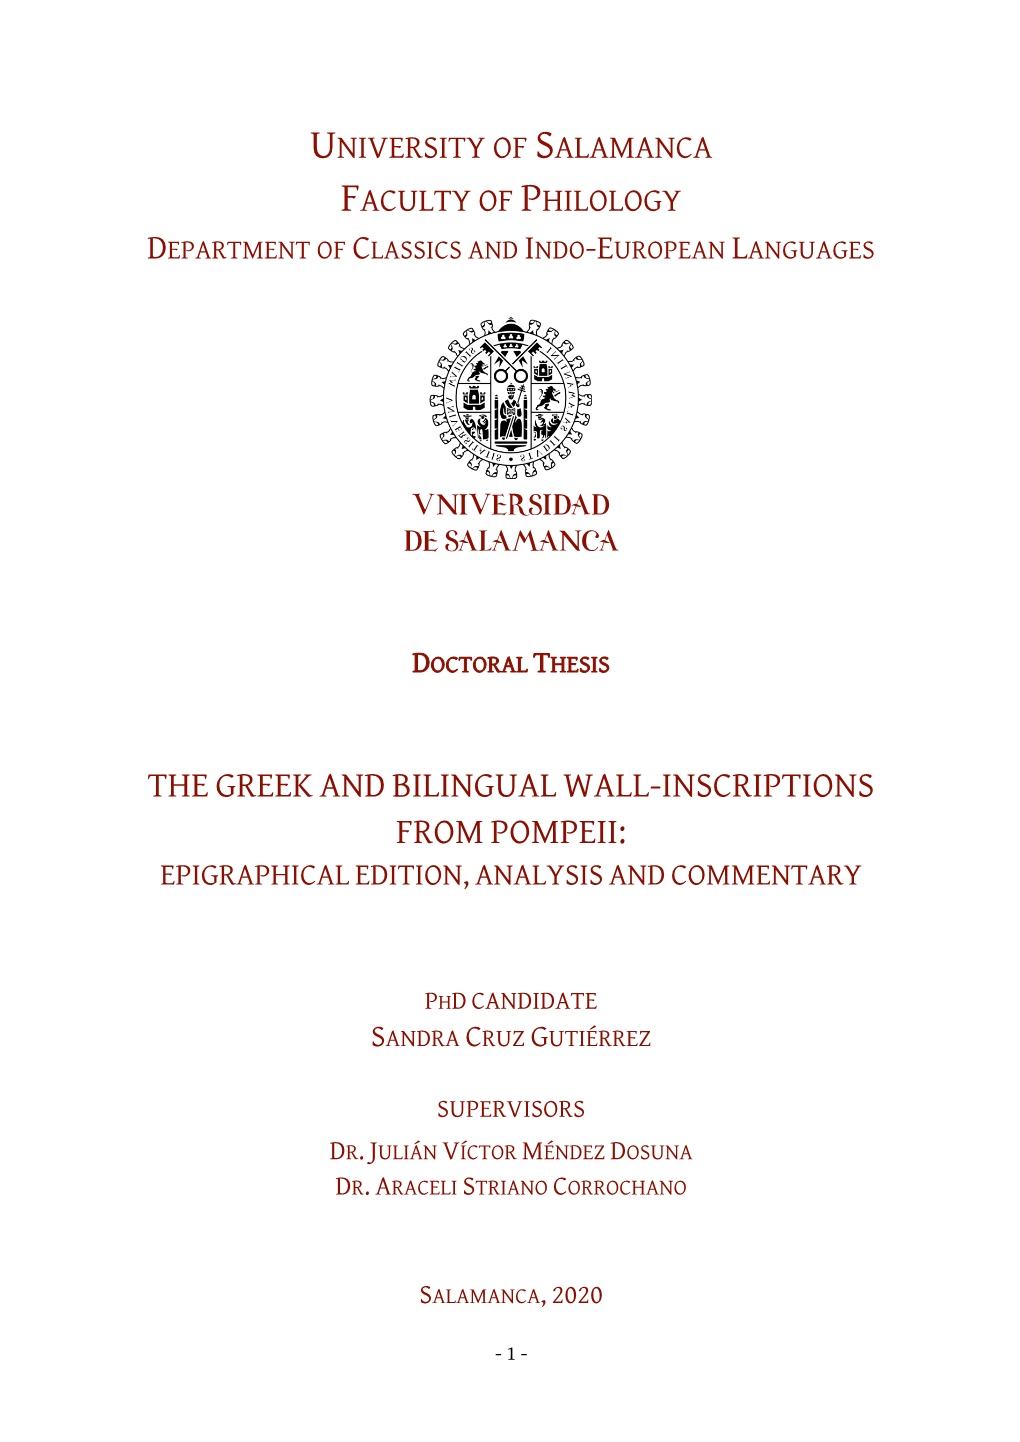 Department of Classics and Indo-European Languages